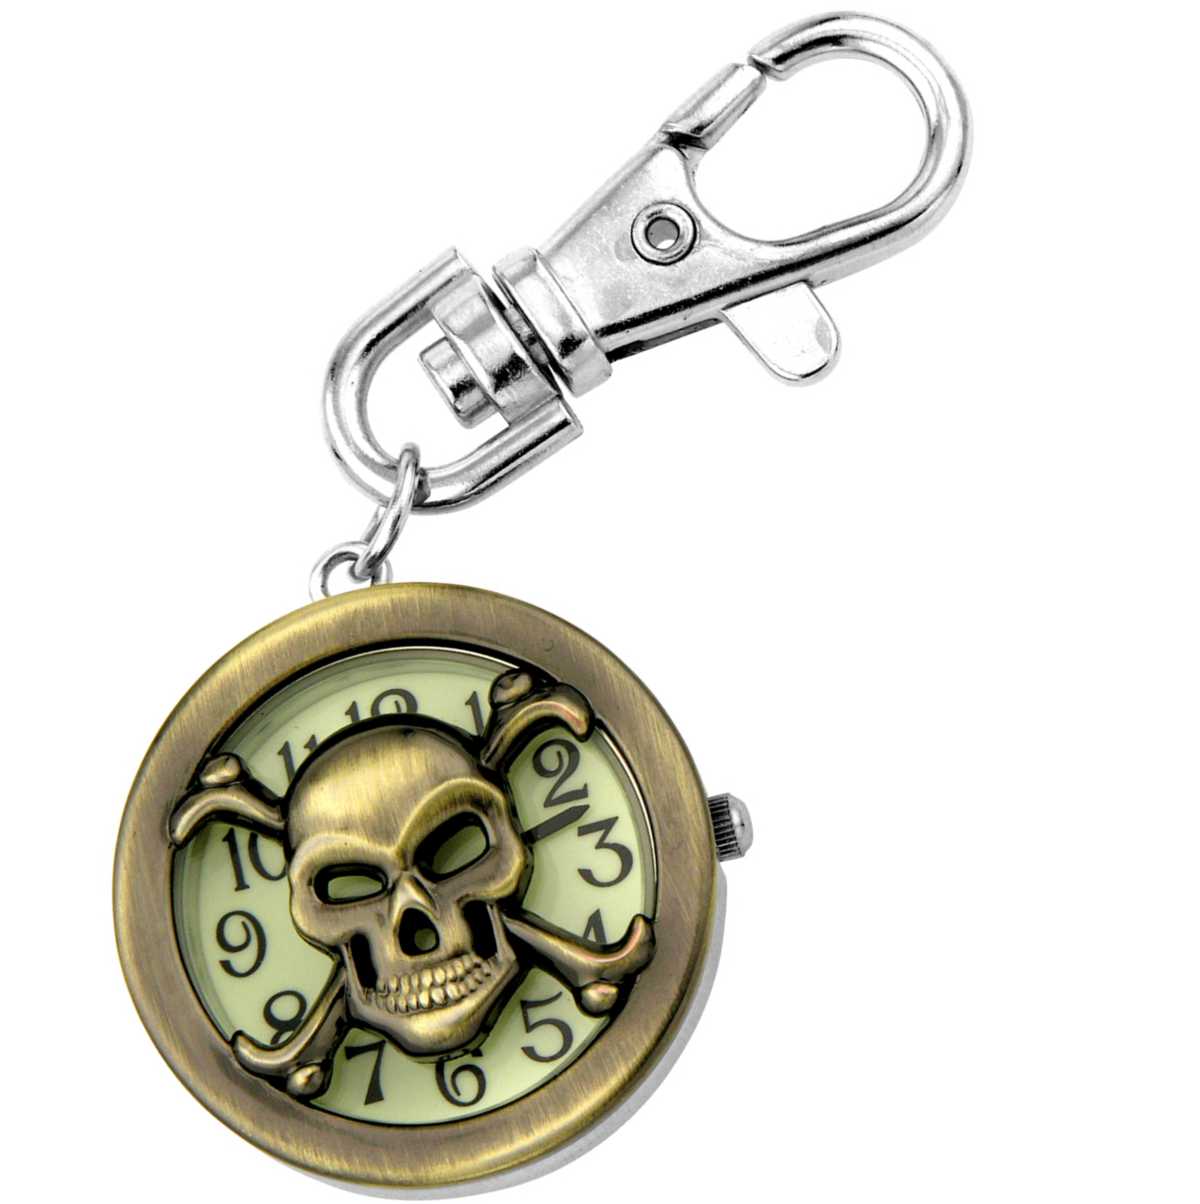 Keychain Clock Skull & Crossbones